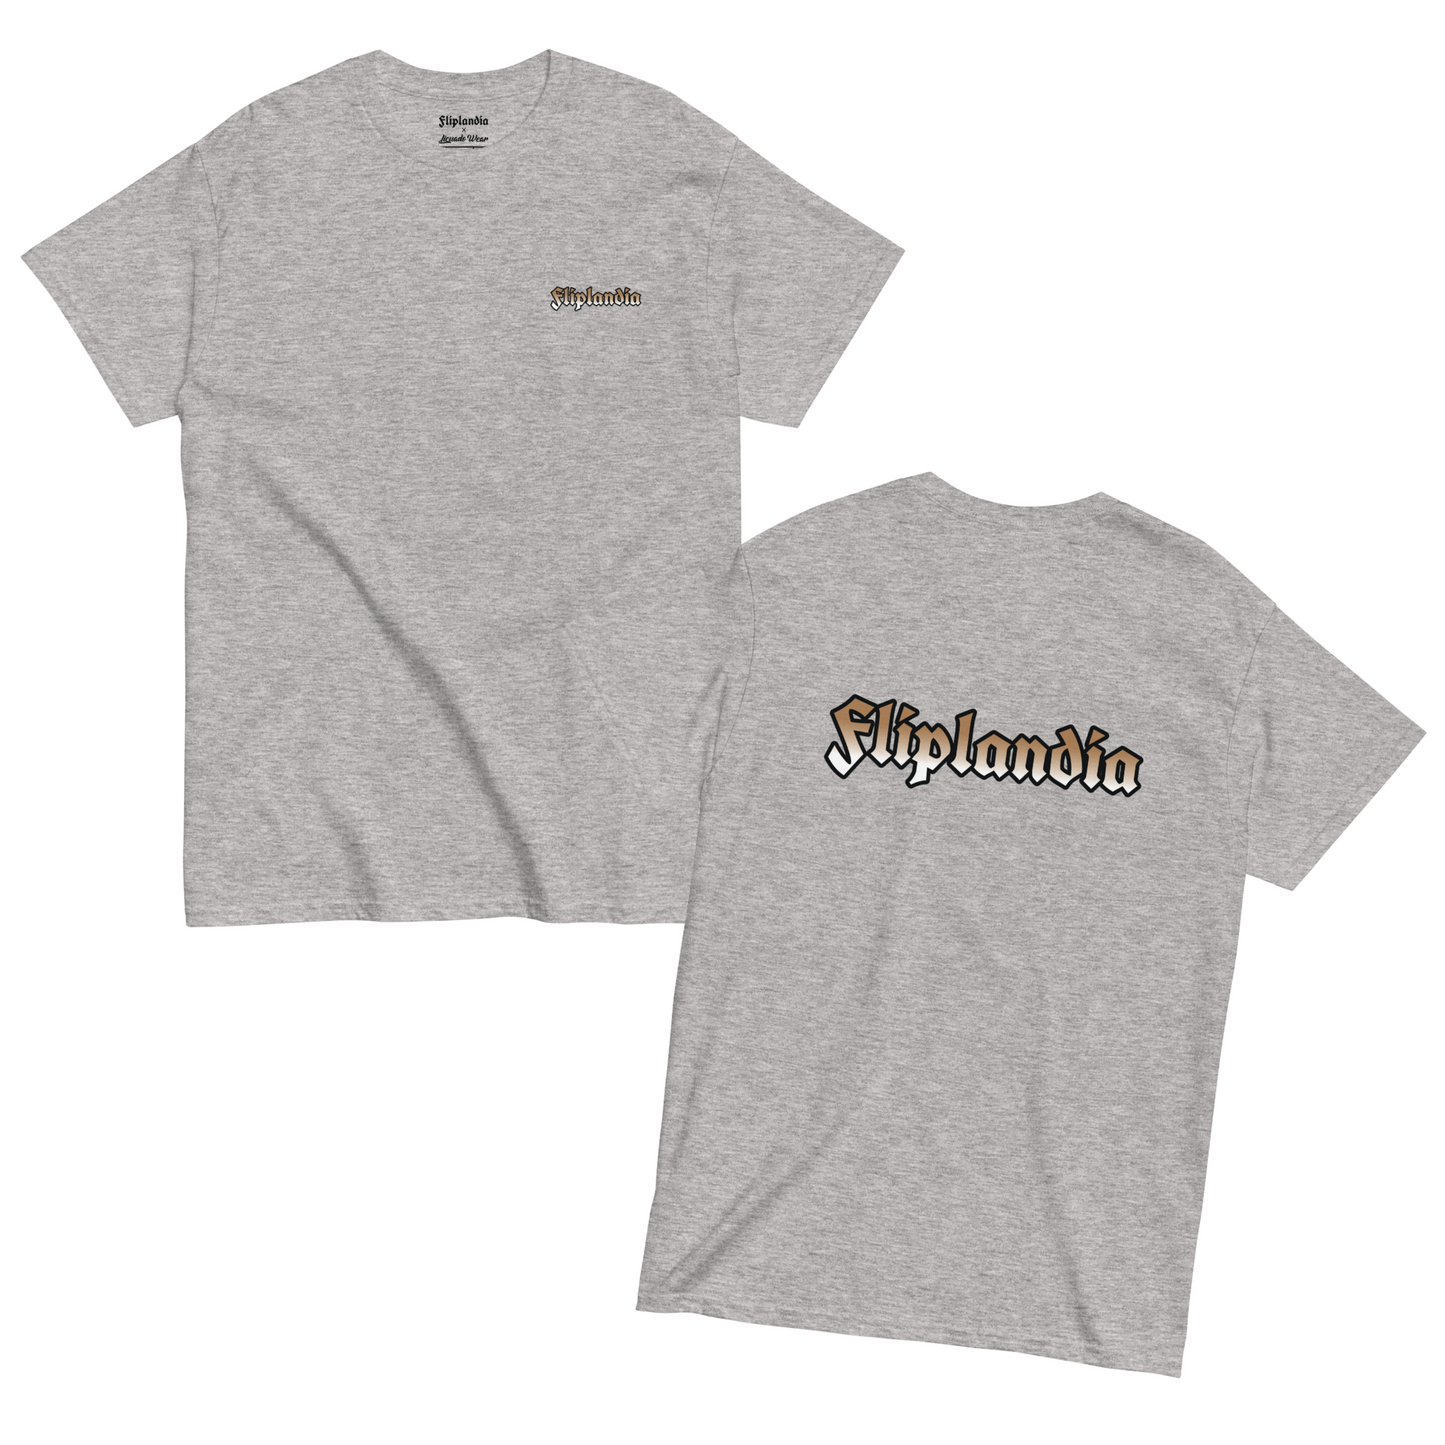 Fliplandia Tan Gradient - Unisex T-shirt